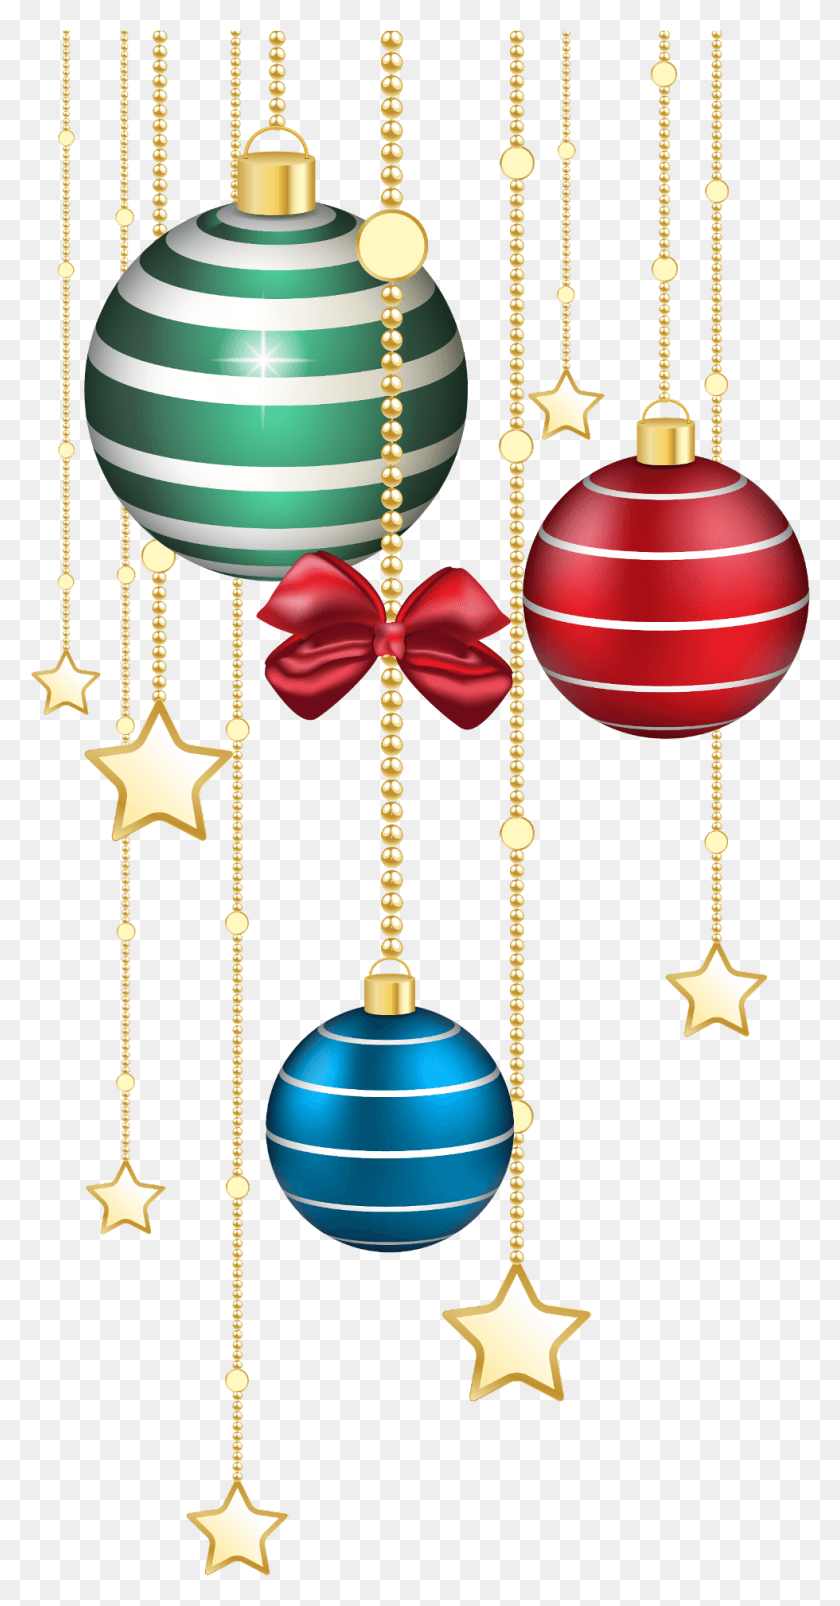 980x1943 Descargar Pngftestickers Estrellas De Navidad Adornos Bolas Decoraciones De Navidad Fondo Transparente, Accesorios, Accesorio, Adorno Hd Png